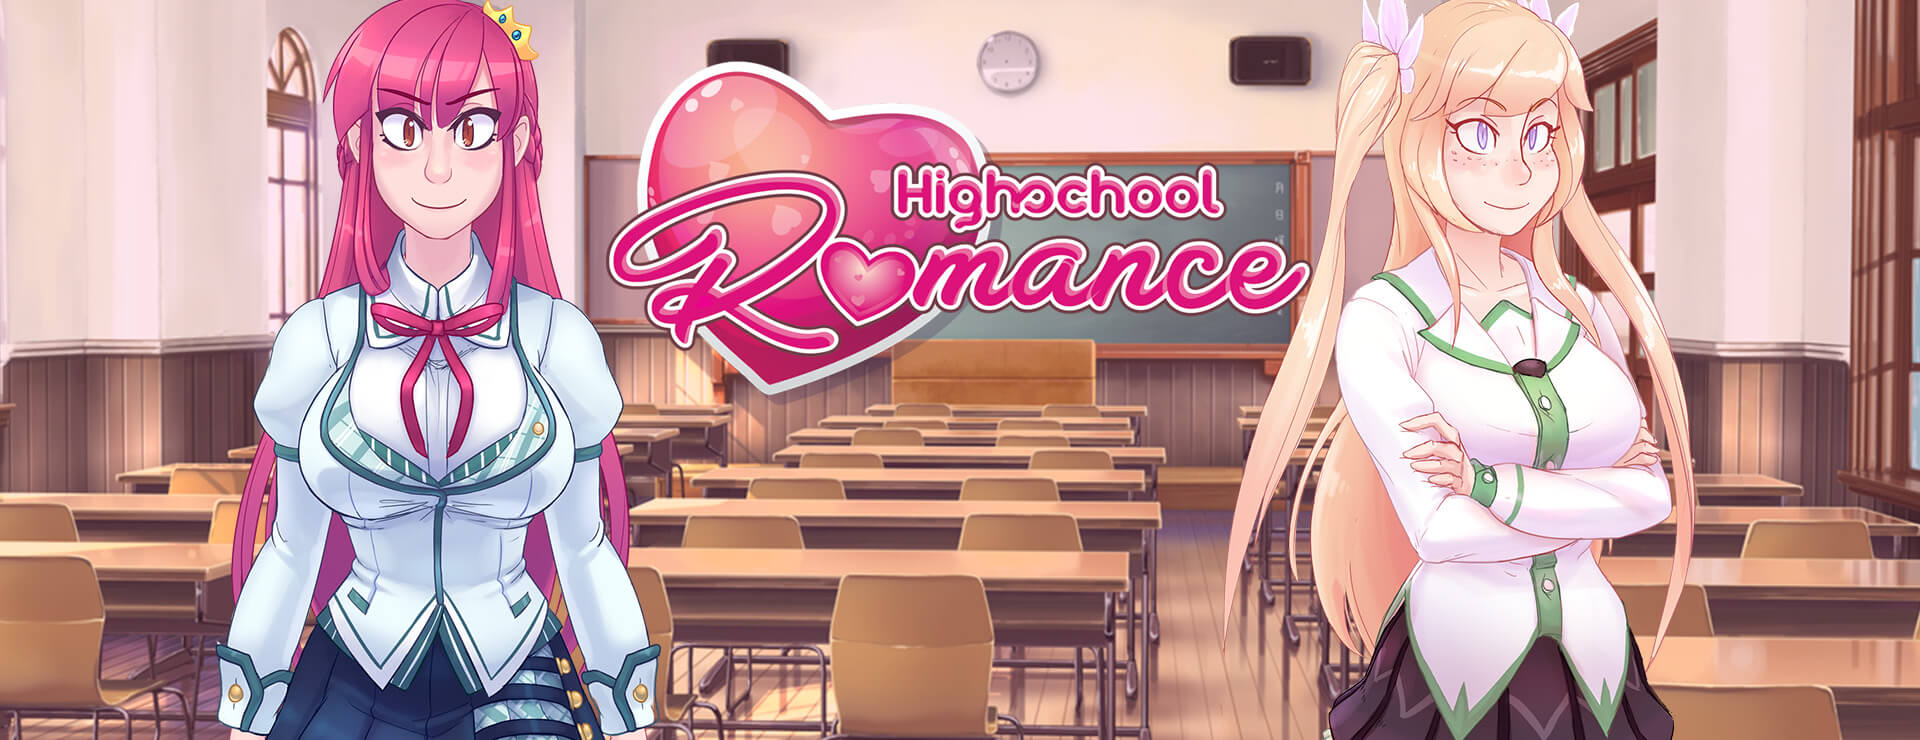 Highschool Romance - Powieść wizualna Gra